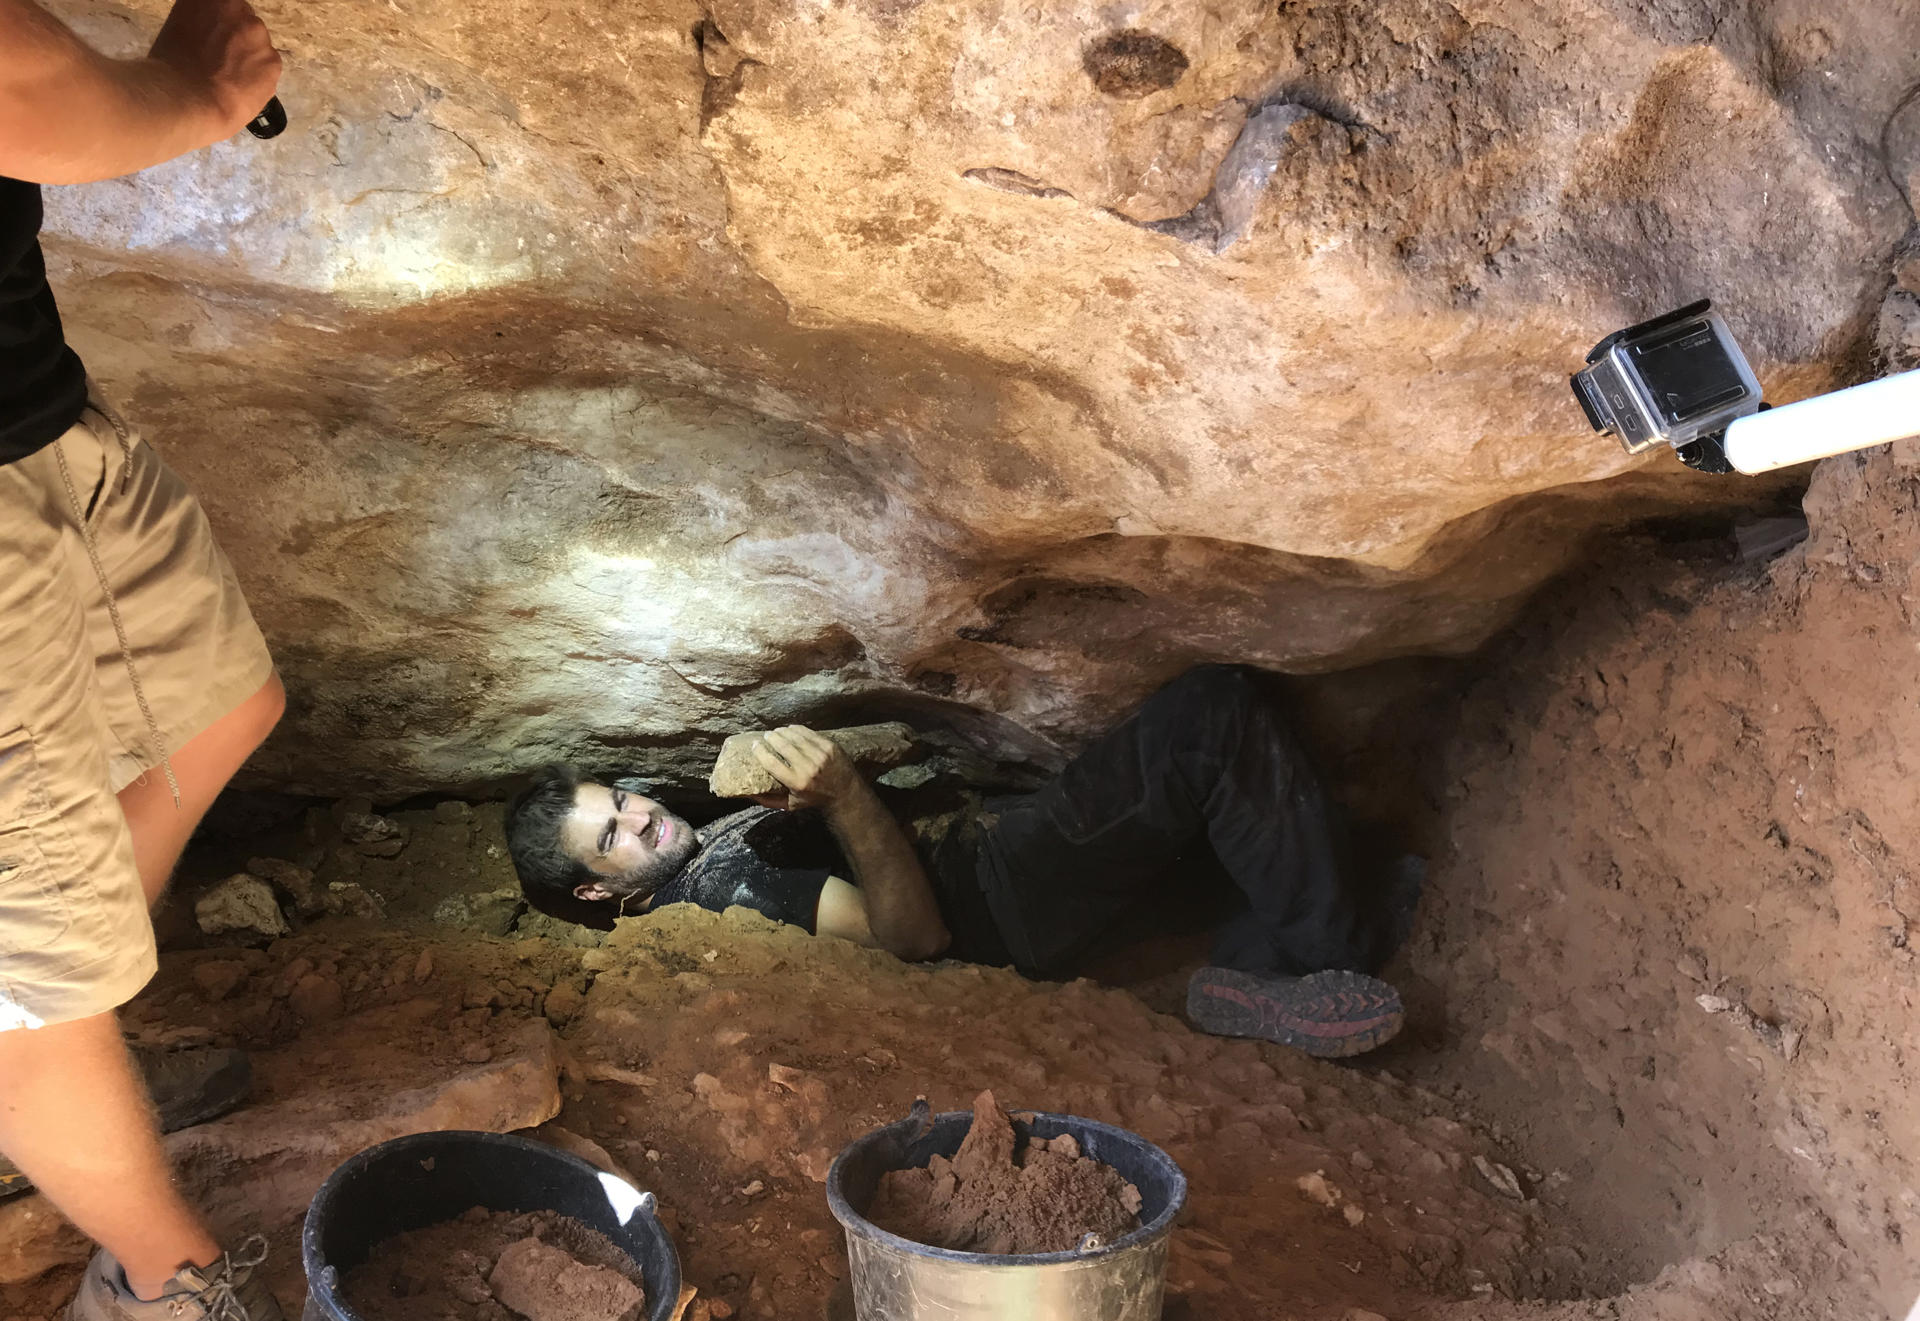 Los investigadores de la Cueva del Arco de Cieza (Murcia) han descubierto una gran cavidad con muestras de la existencia del oso cavernario, algo único tan al sur de Europa, según ha desvelado el profesor de la Universidad de Murcia Ignacio Martín Lerma (en la foyo) durante la presentación de los hallazgos. EFE/ Universidad de Murcia SOLO USO EDITORIAL/SOLO DISPONIBLE PARA ILUSTRAR LA NOTICIA QUE ACOMPAÑA (CRÉDITO OBLIGATORIO)